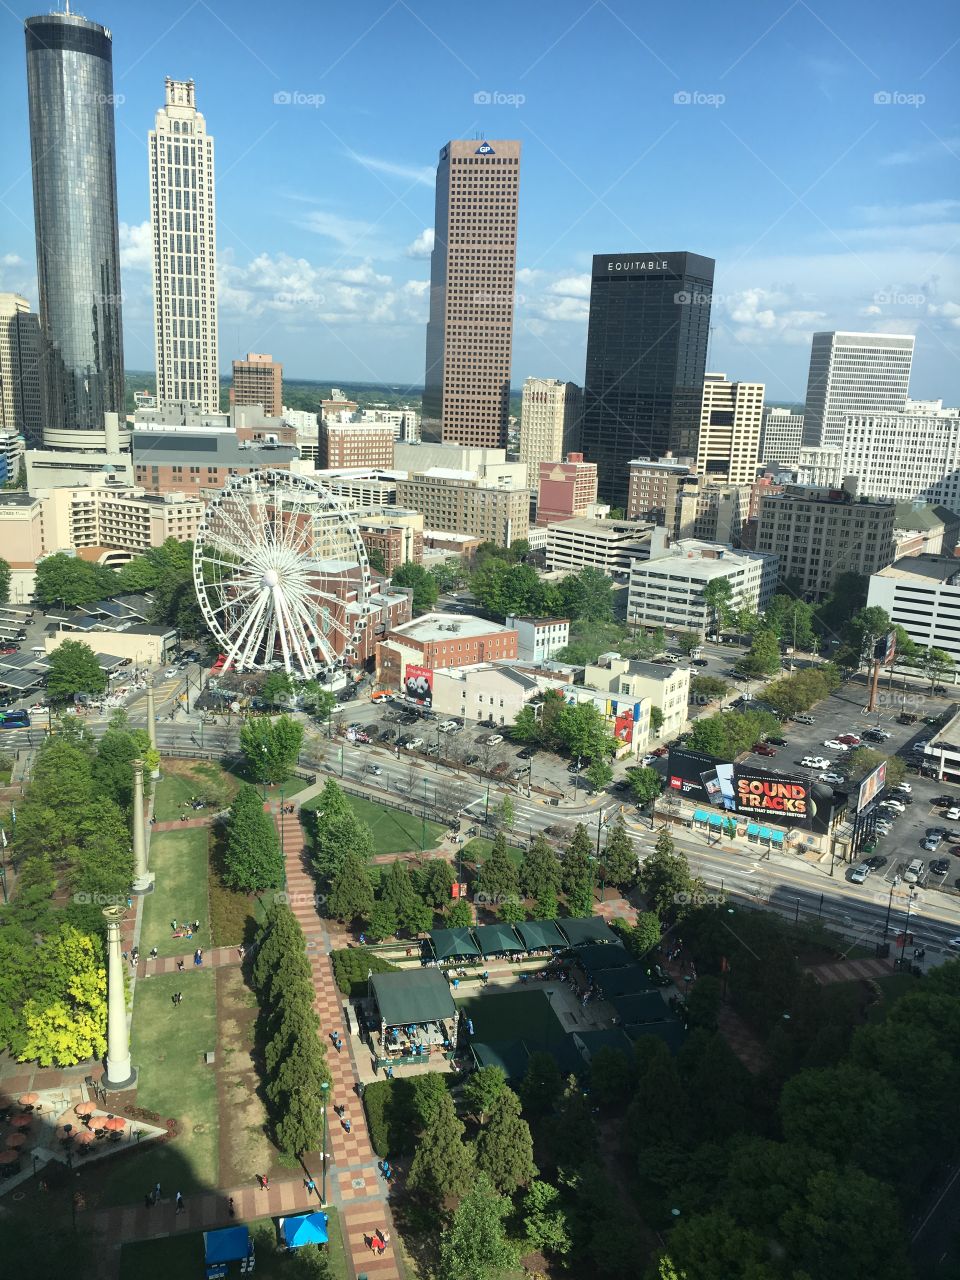 Atlanta Olympic Park